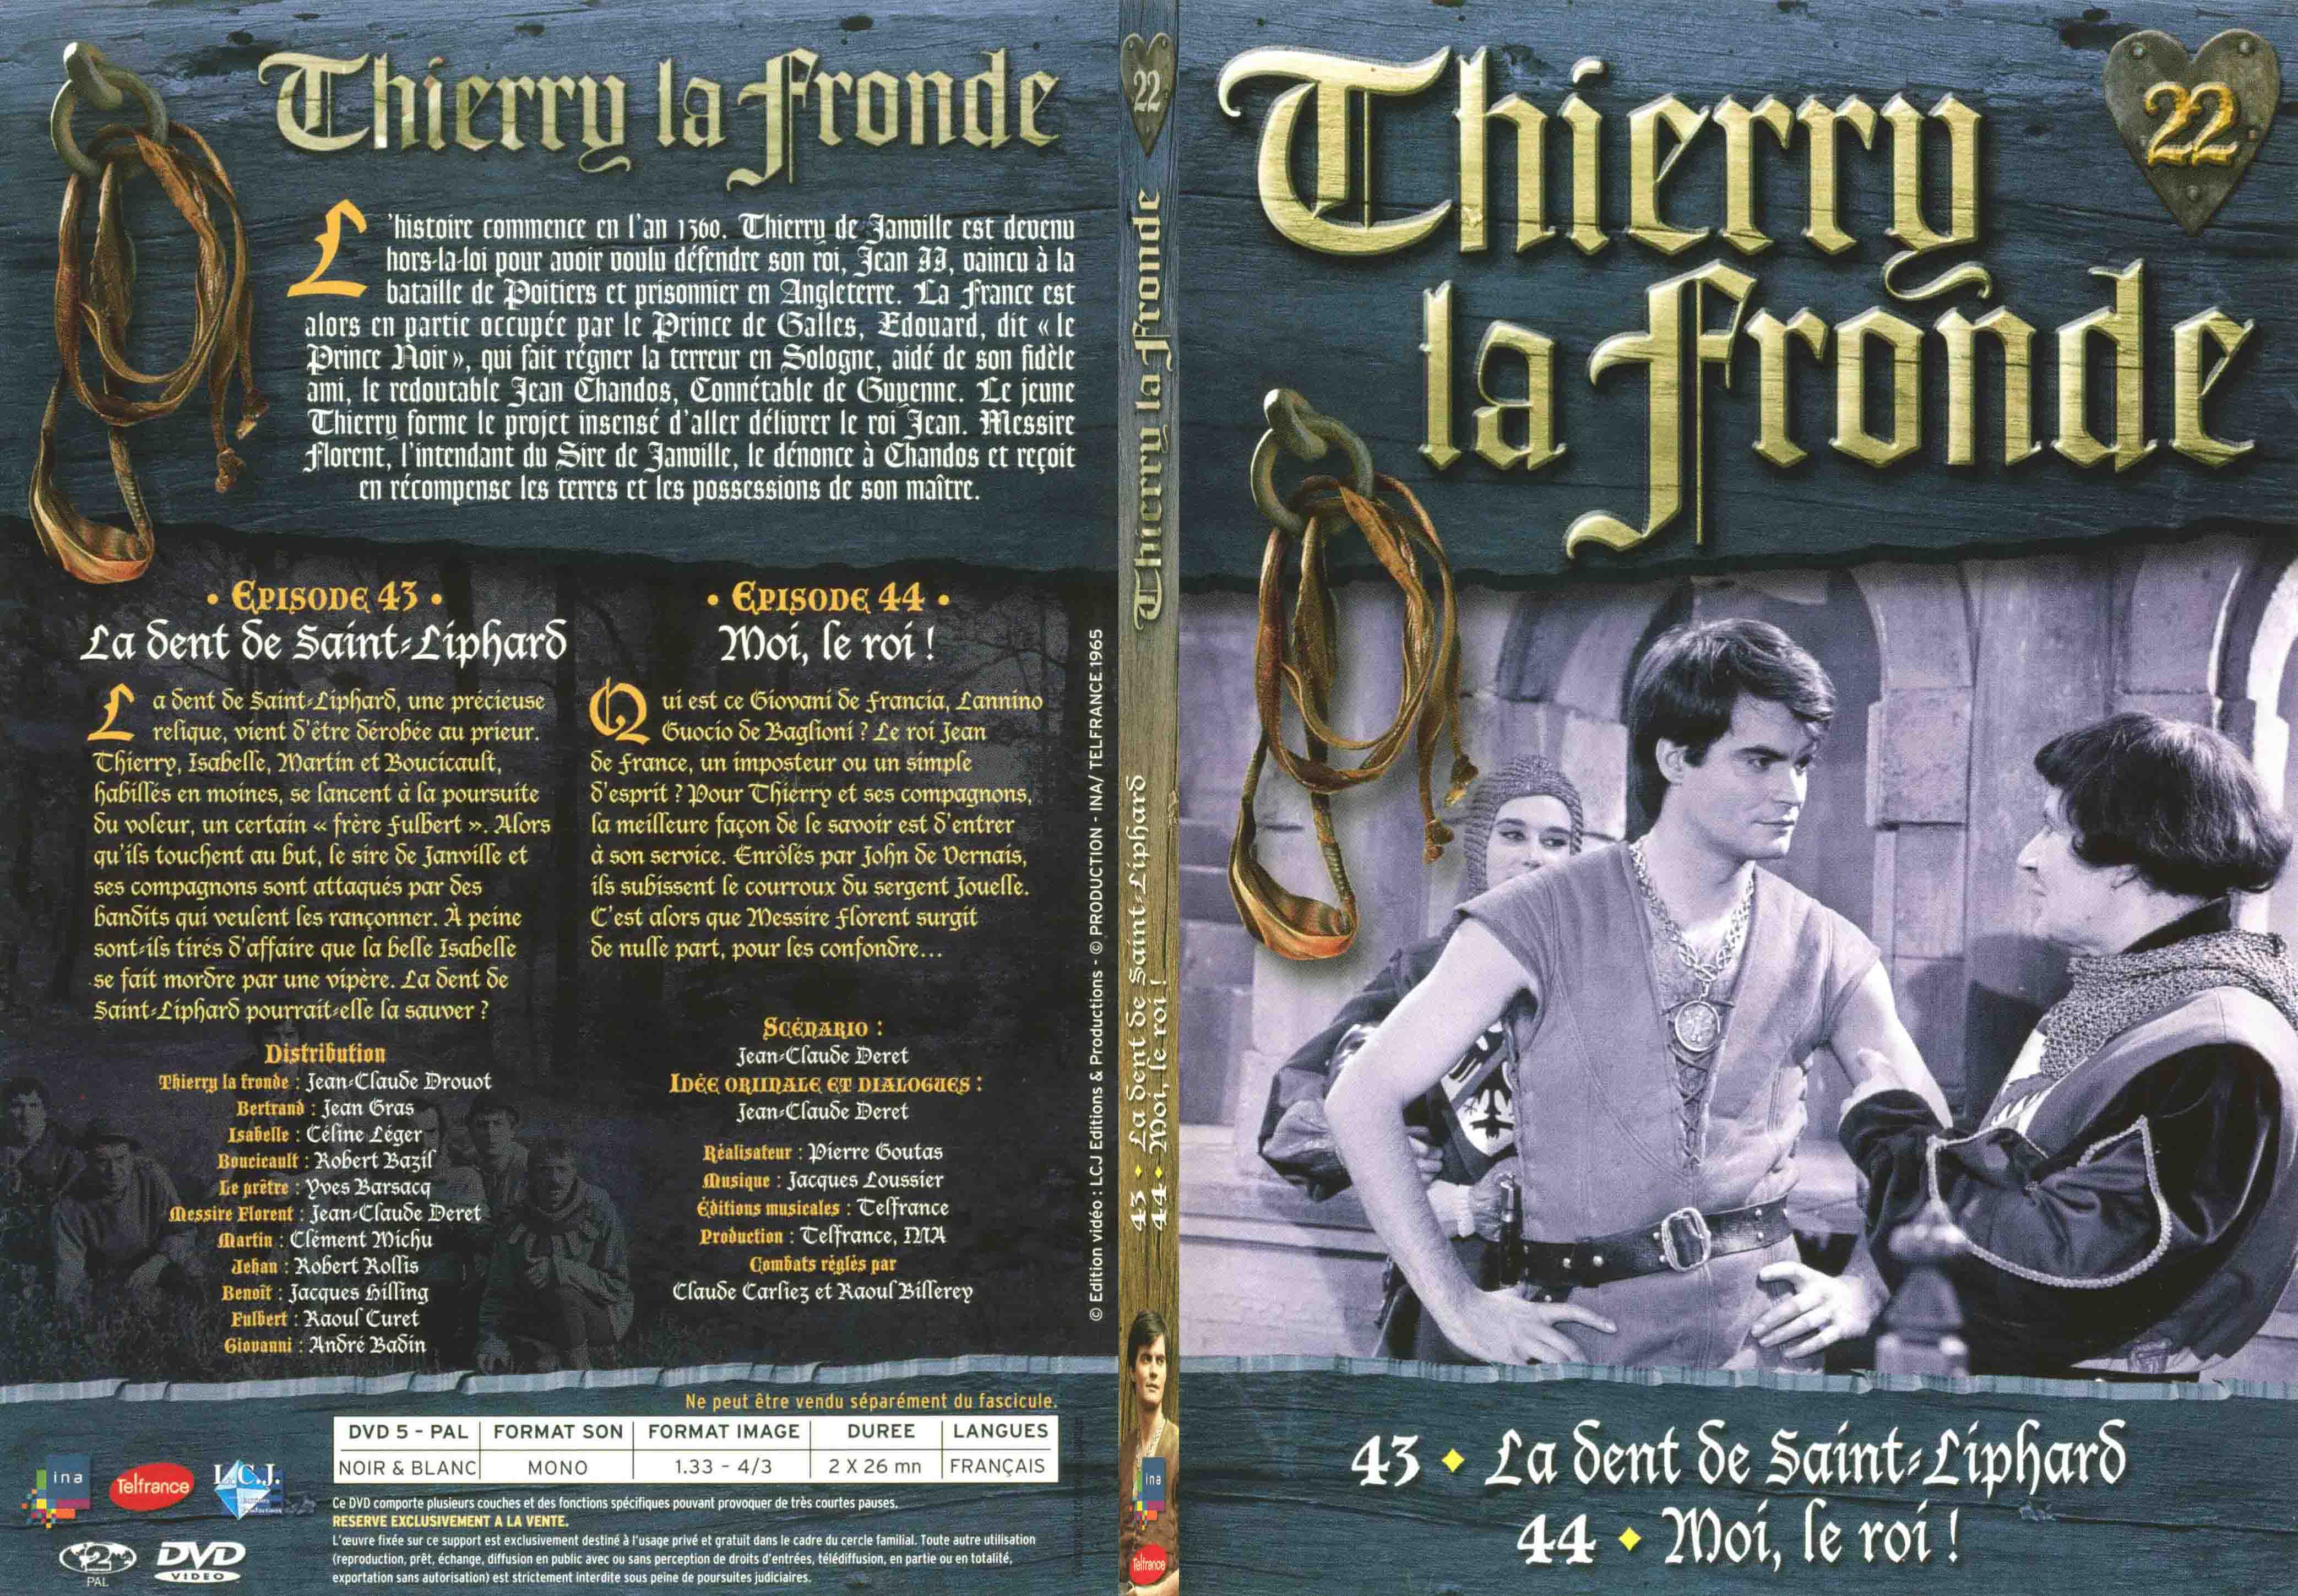 Jaquette DVD Thierry la Fronde vol 22 - SLIM